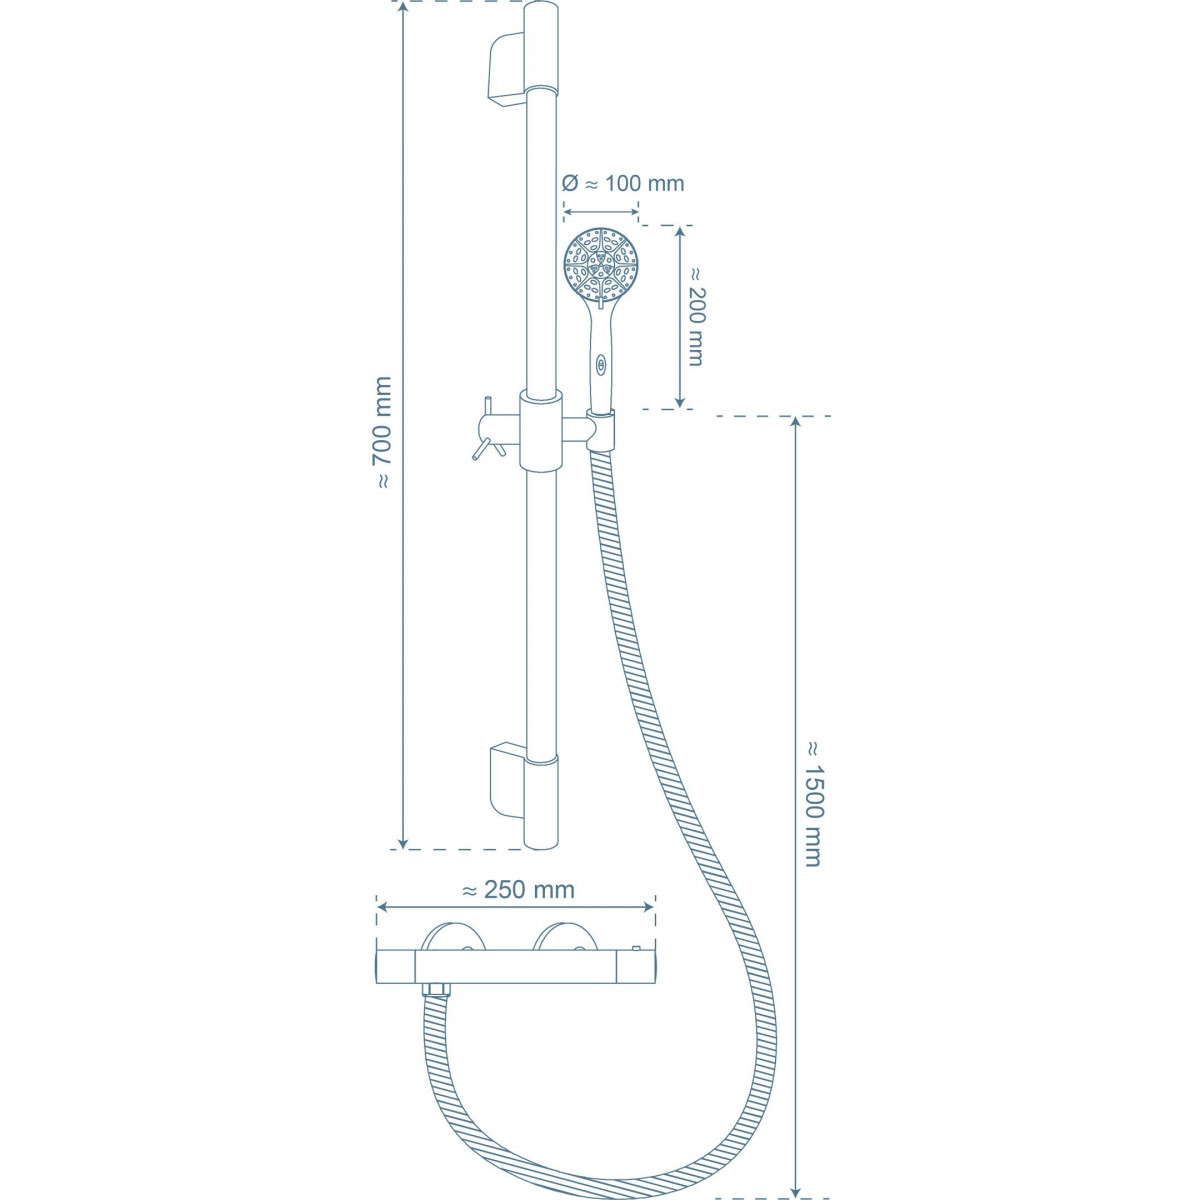 AQUA 2 SAVE Thermostatic shower mixer, chrome